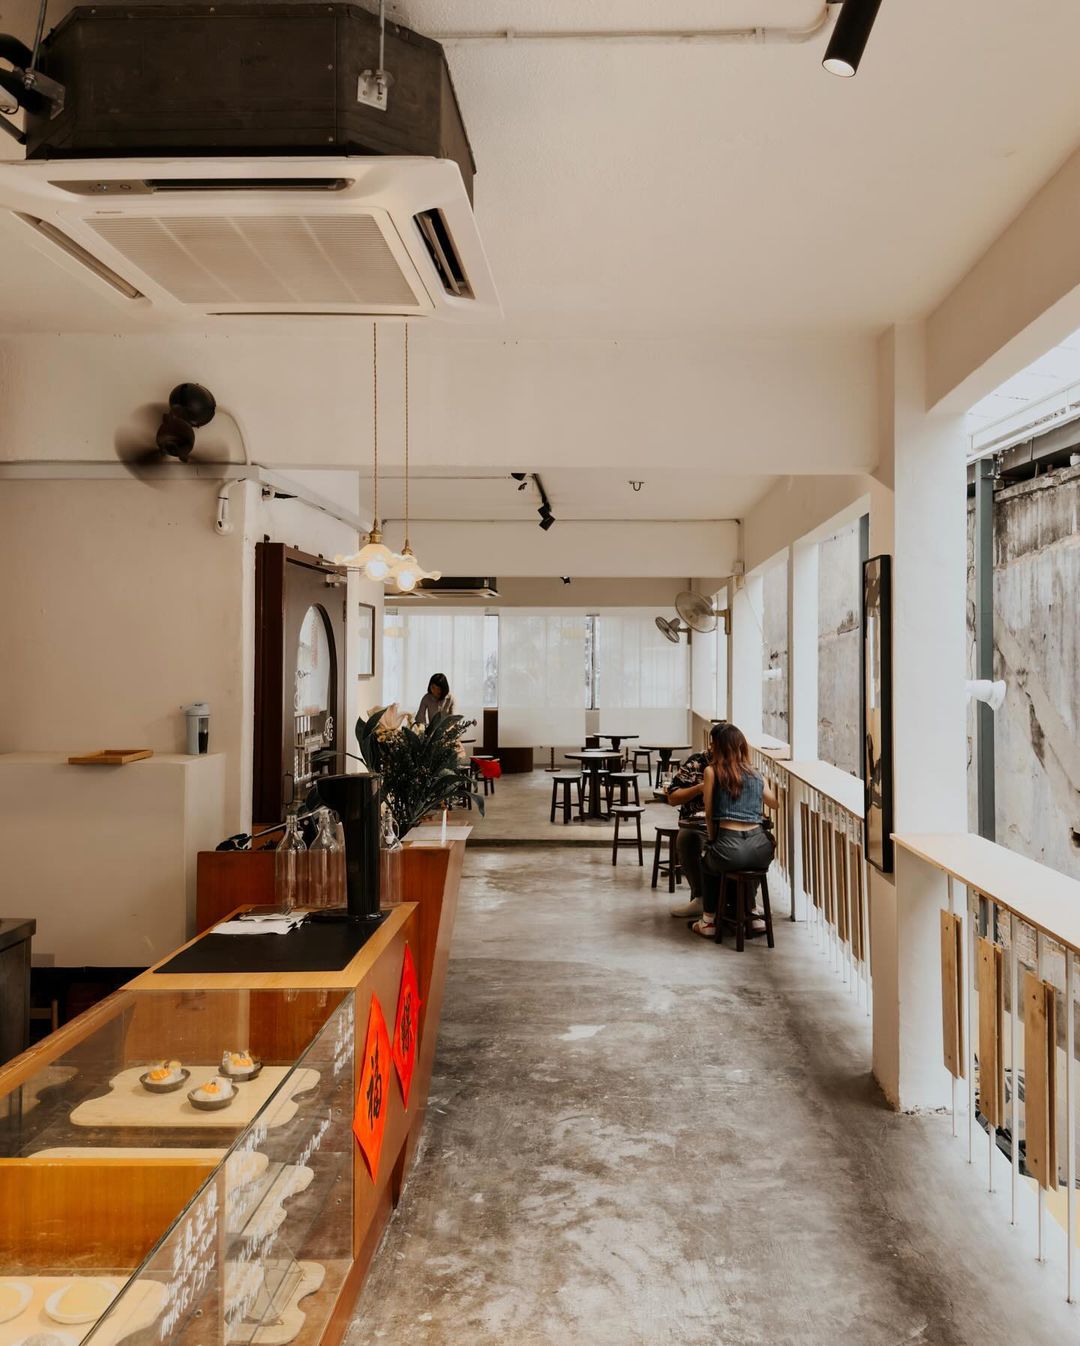 cafes & restaurants in kl & pj - floccus